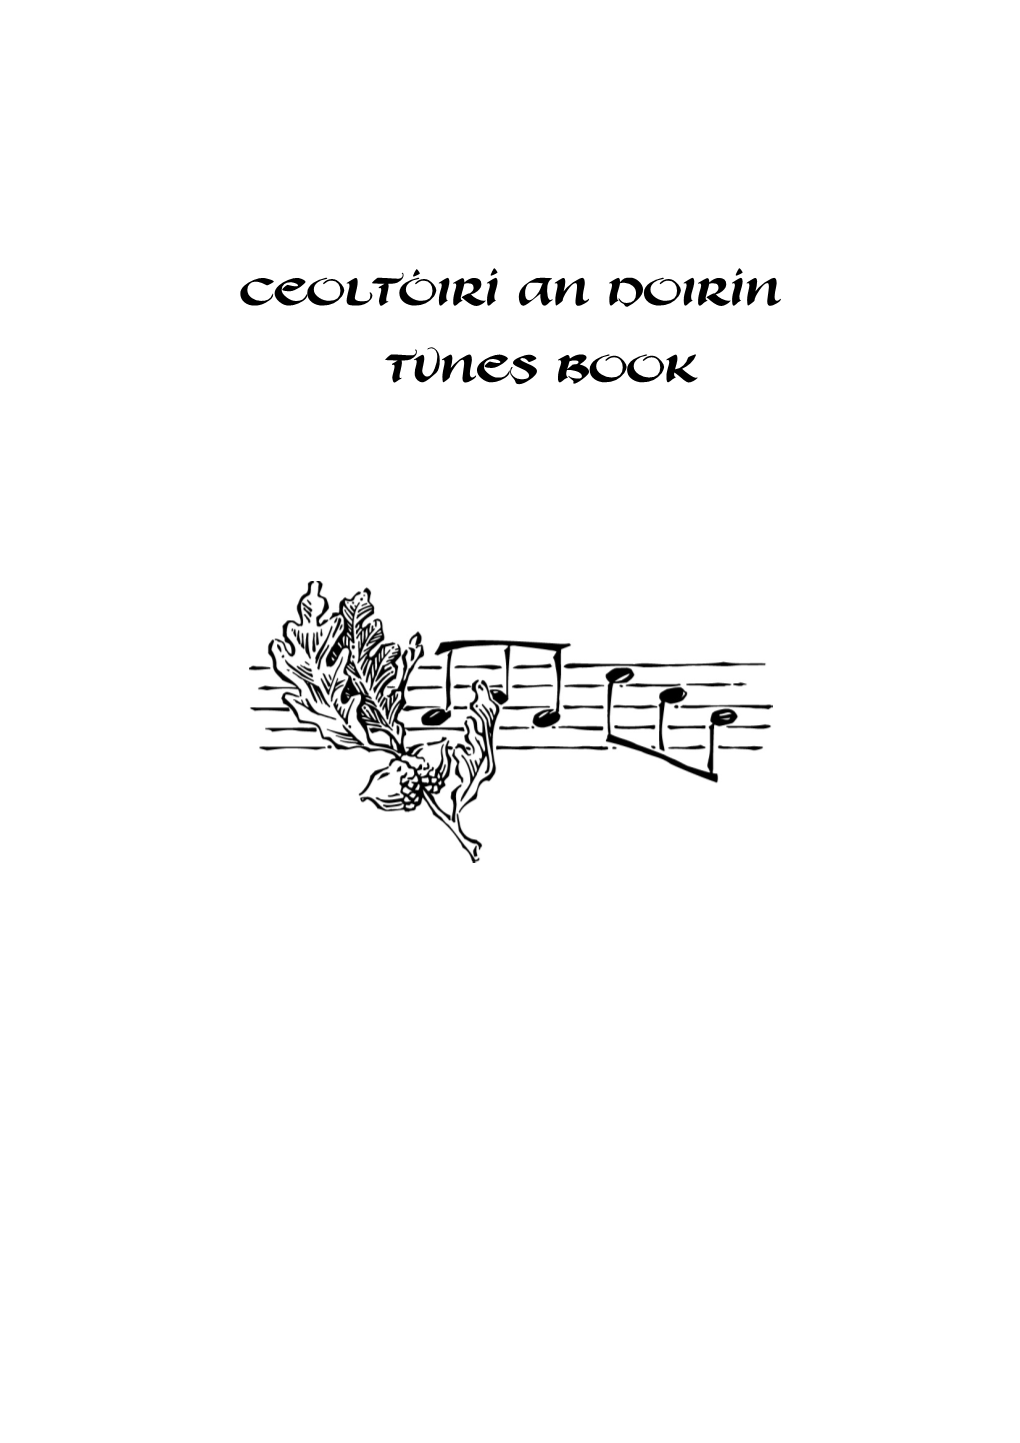 Ceoltóirí an Doirín Tunes Book